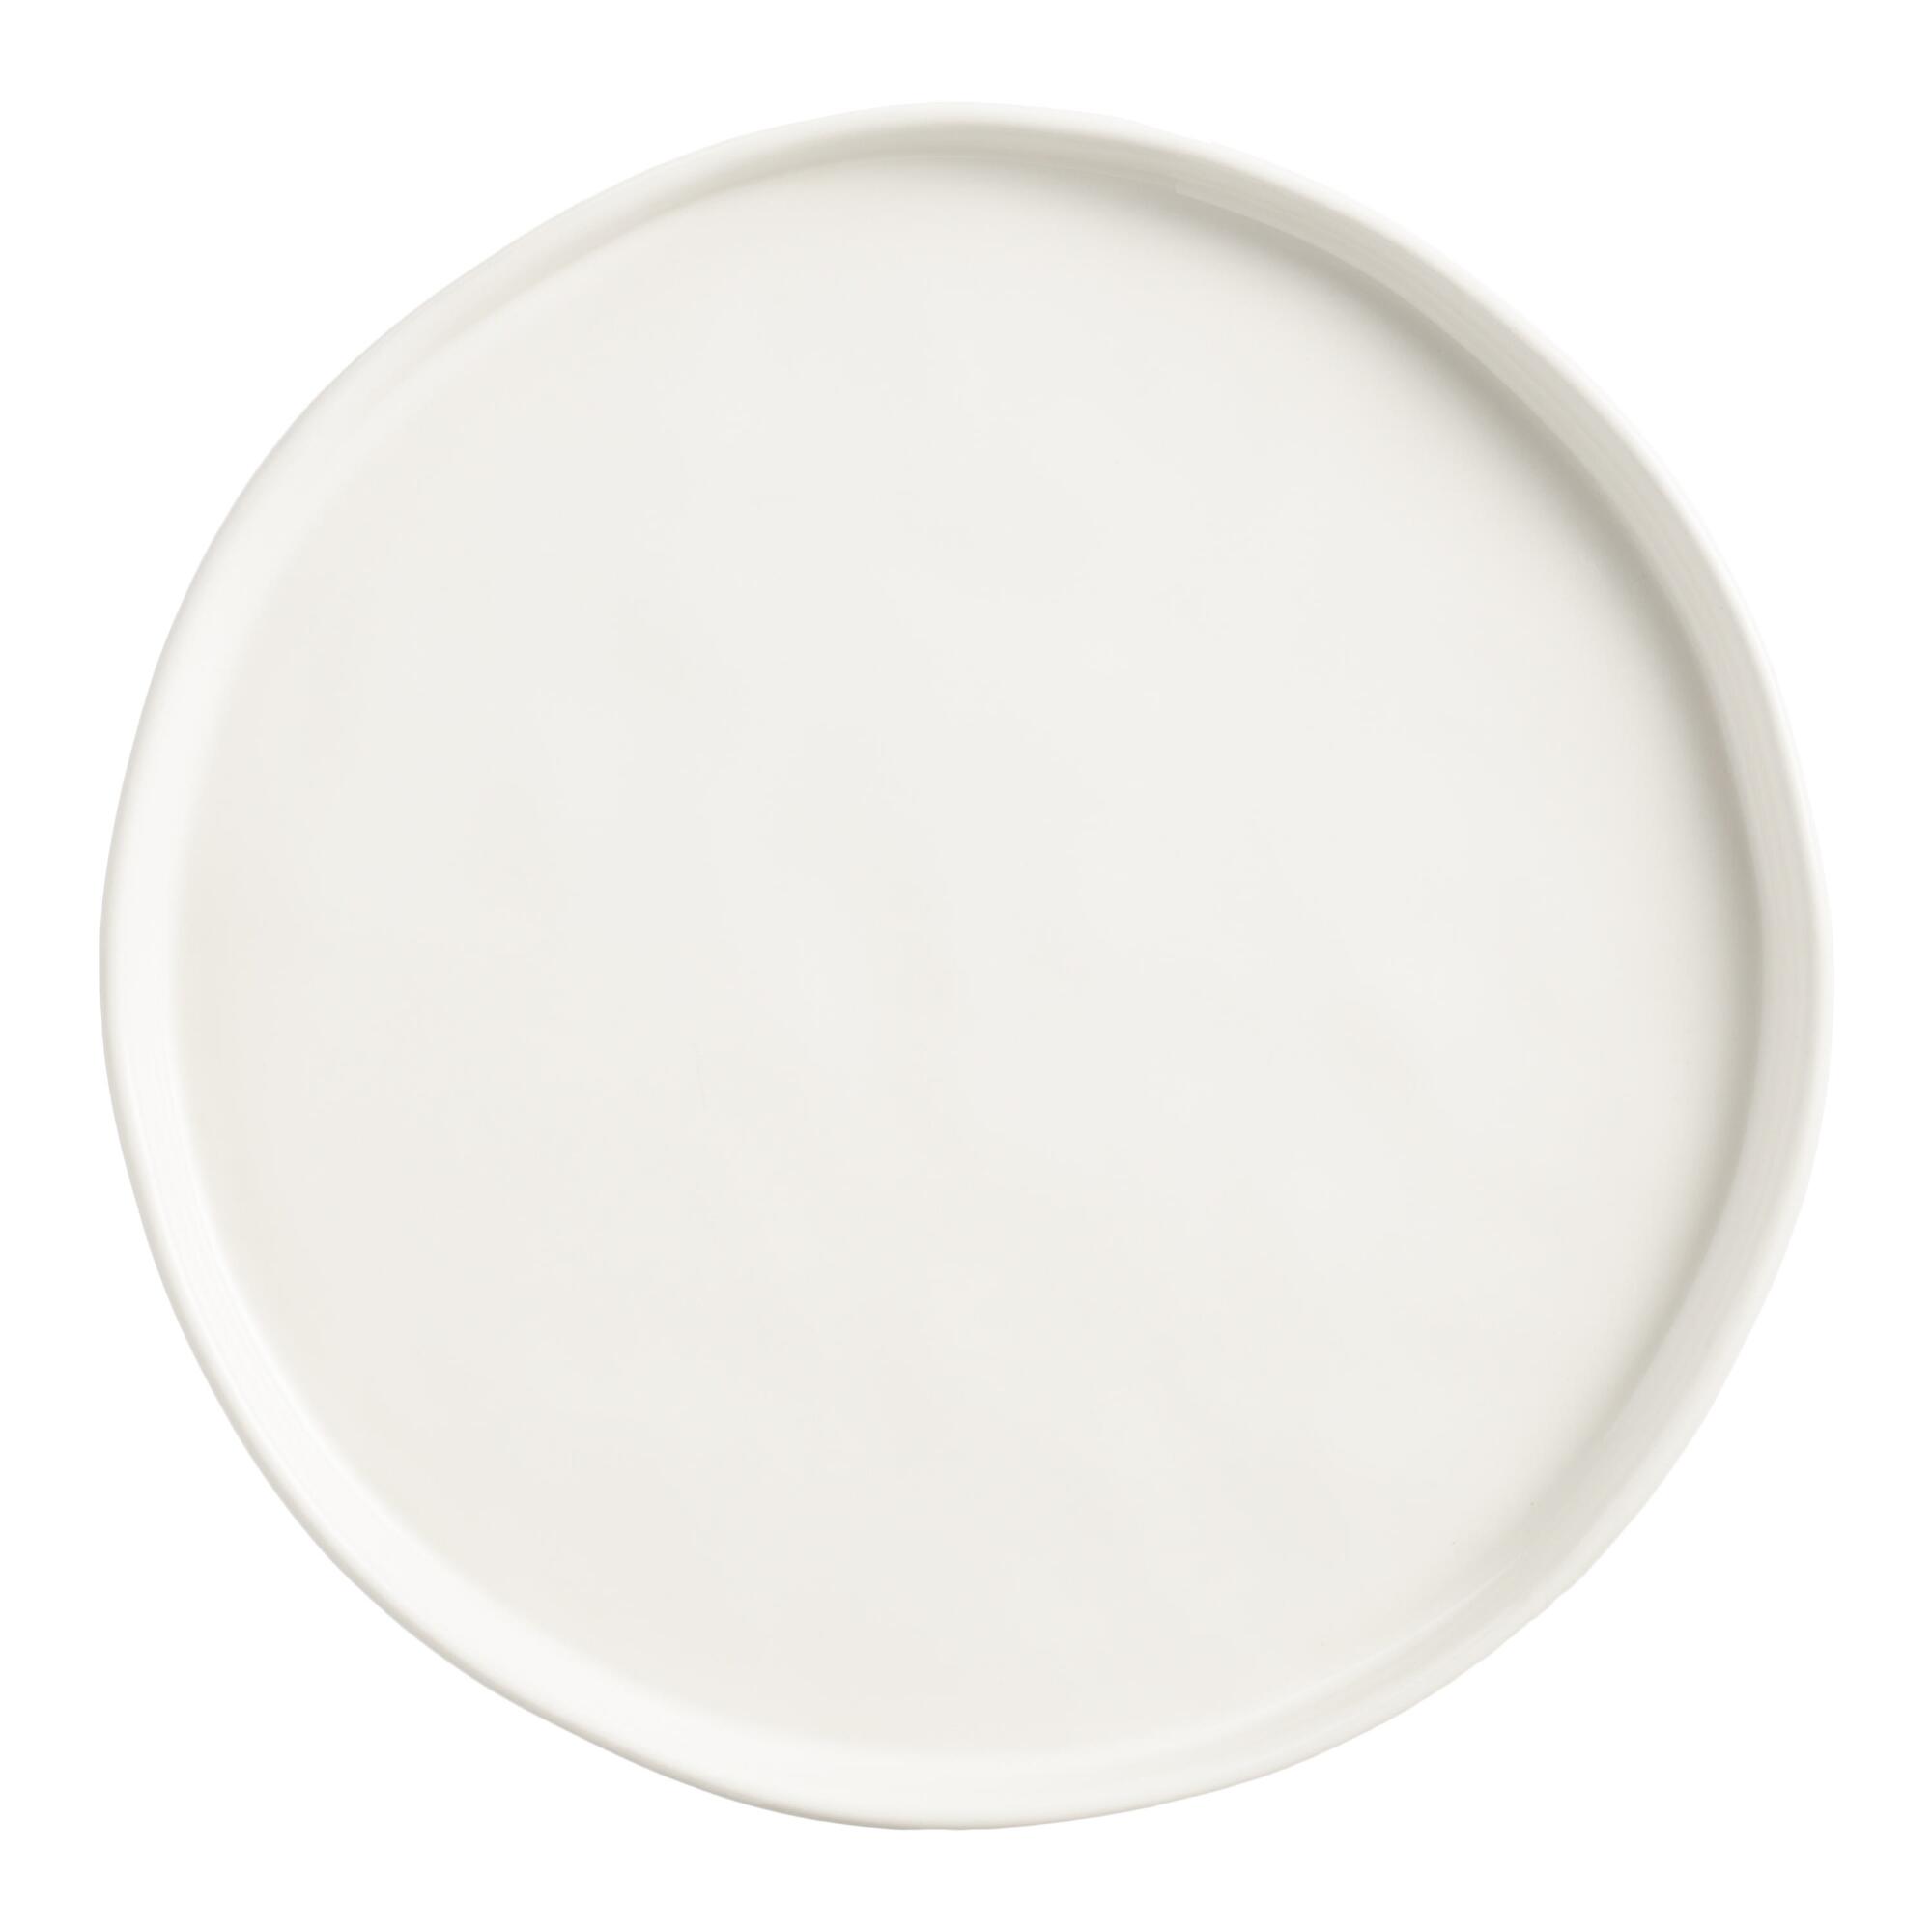 Ivory Organic Rim Mason Salad Plates Set Of 6: White - Stoneware by World Market